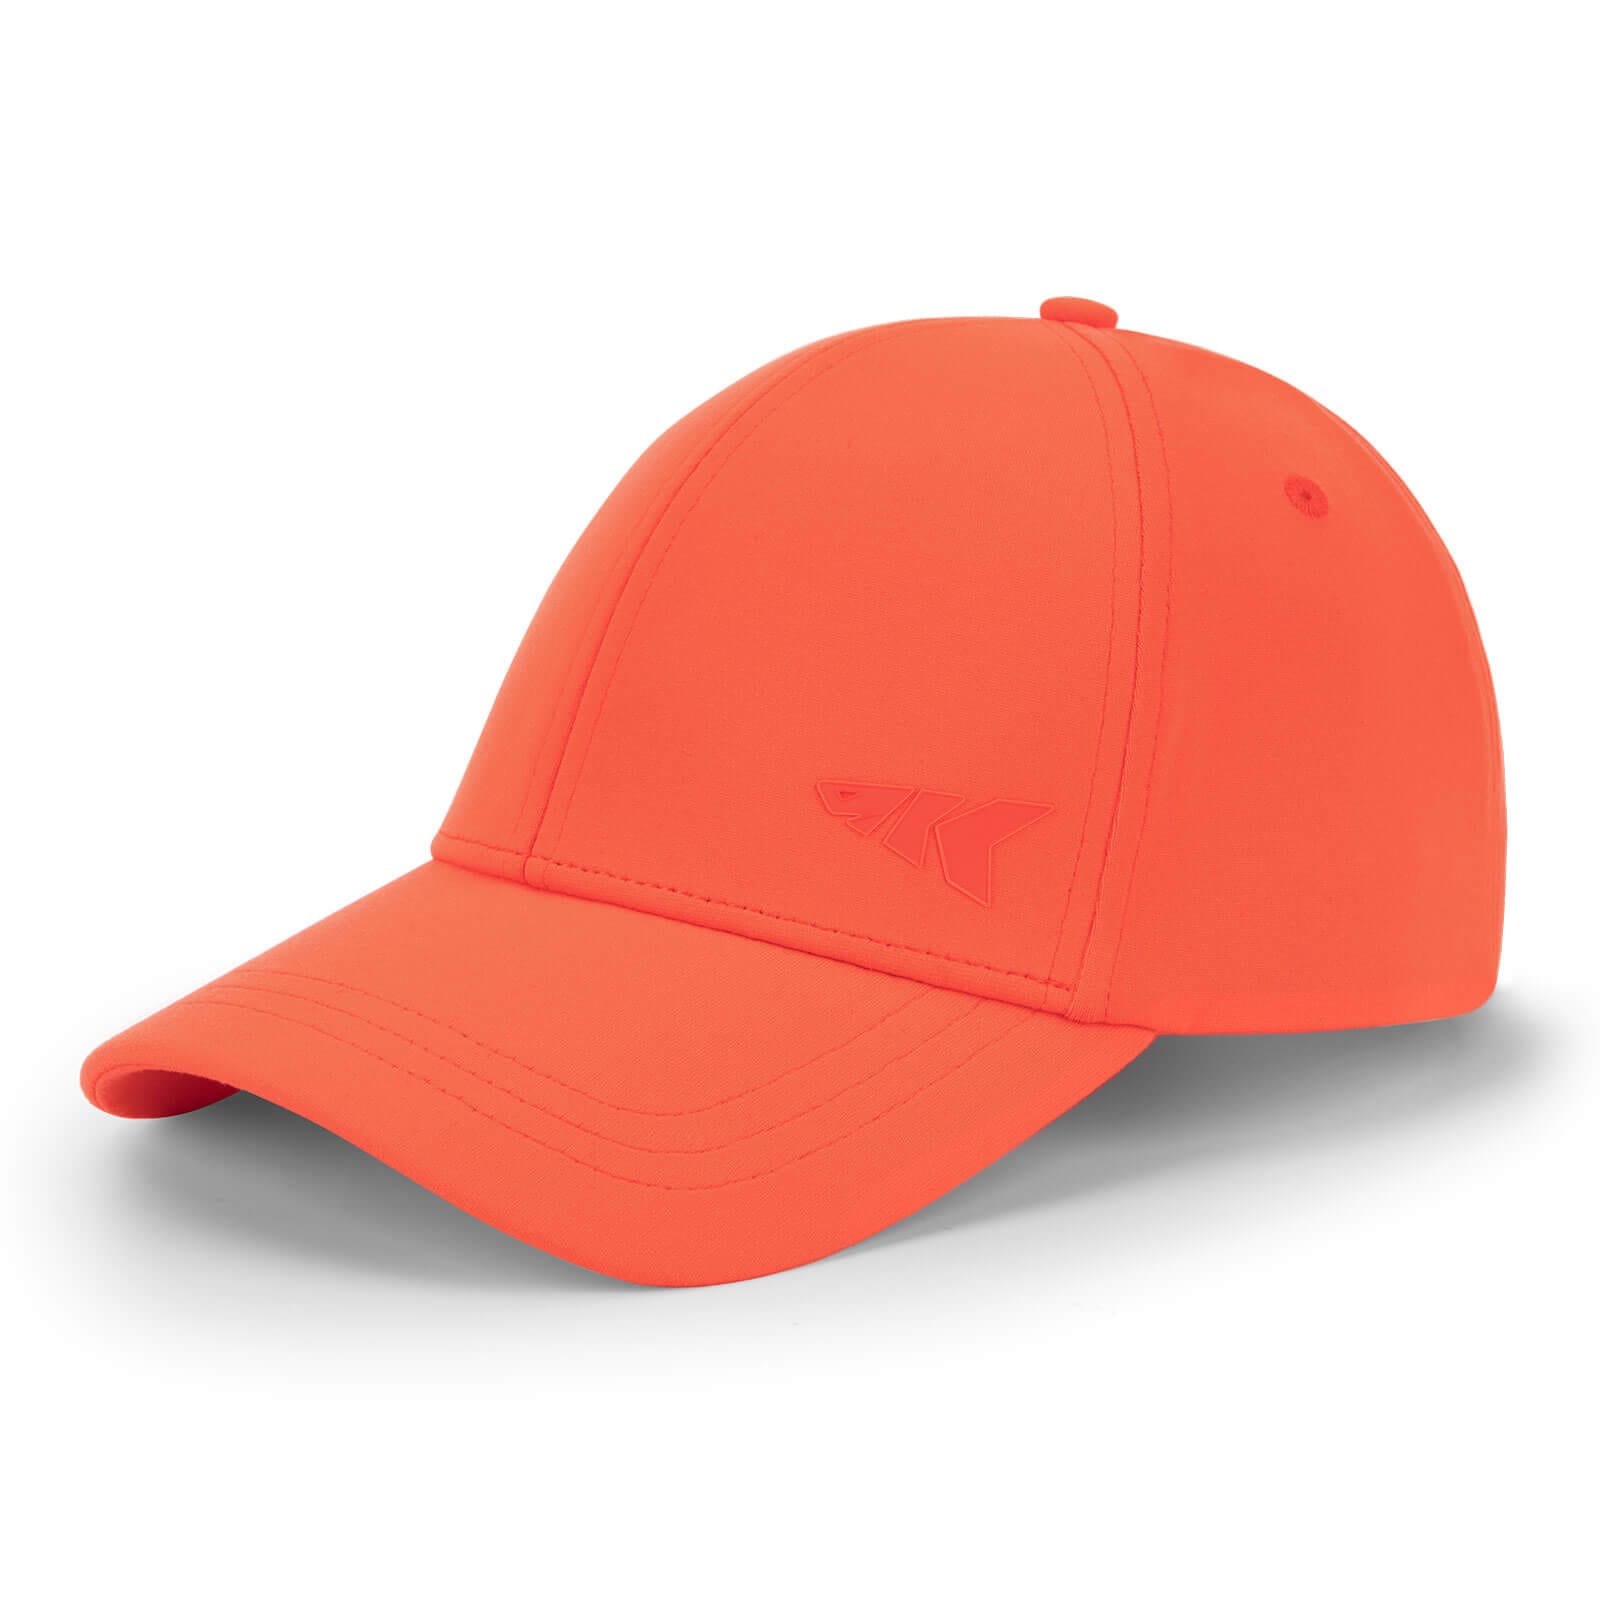 KastKing Official Caps - Adjustable / Orange